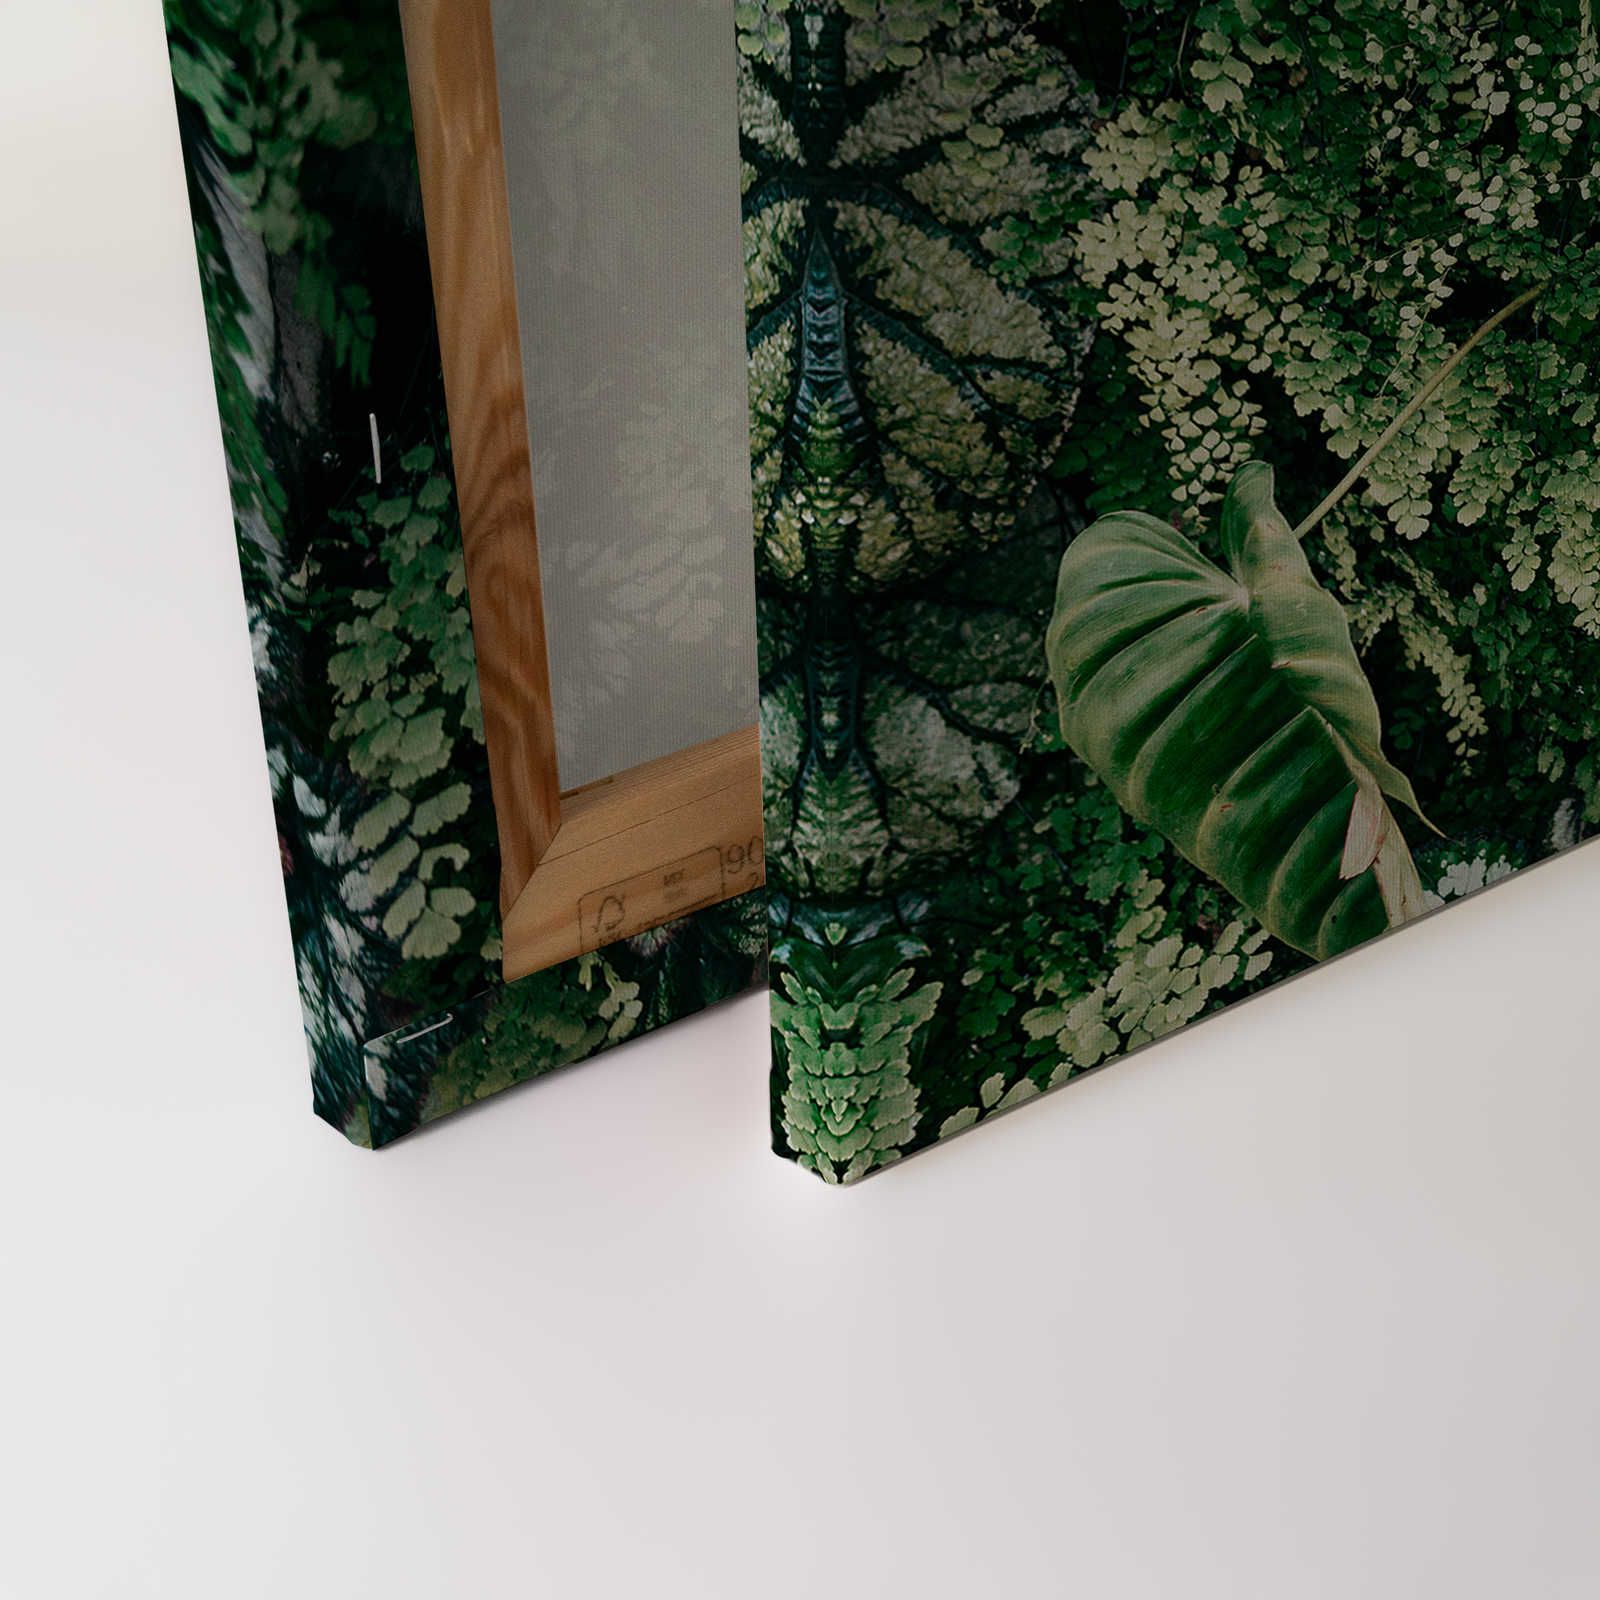             Deep Green 2 - Pintura sobre lienzo Matorral de follaje, helechos y plantas colgantes - 0,90 m x 0,60 m
        